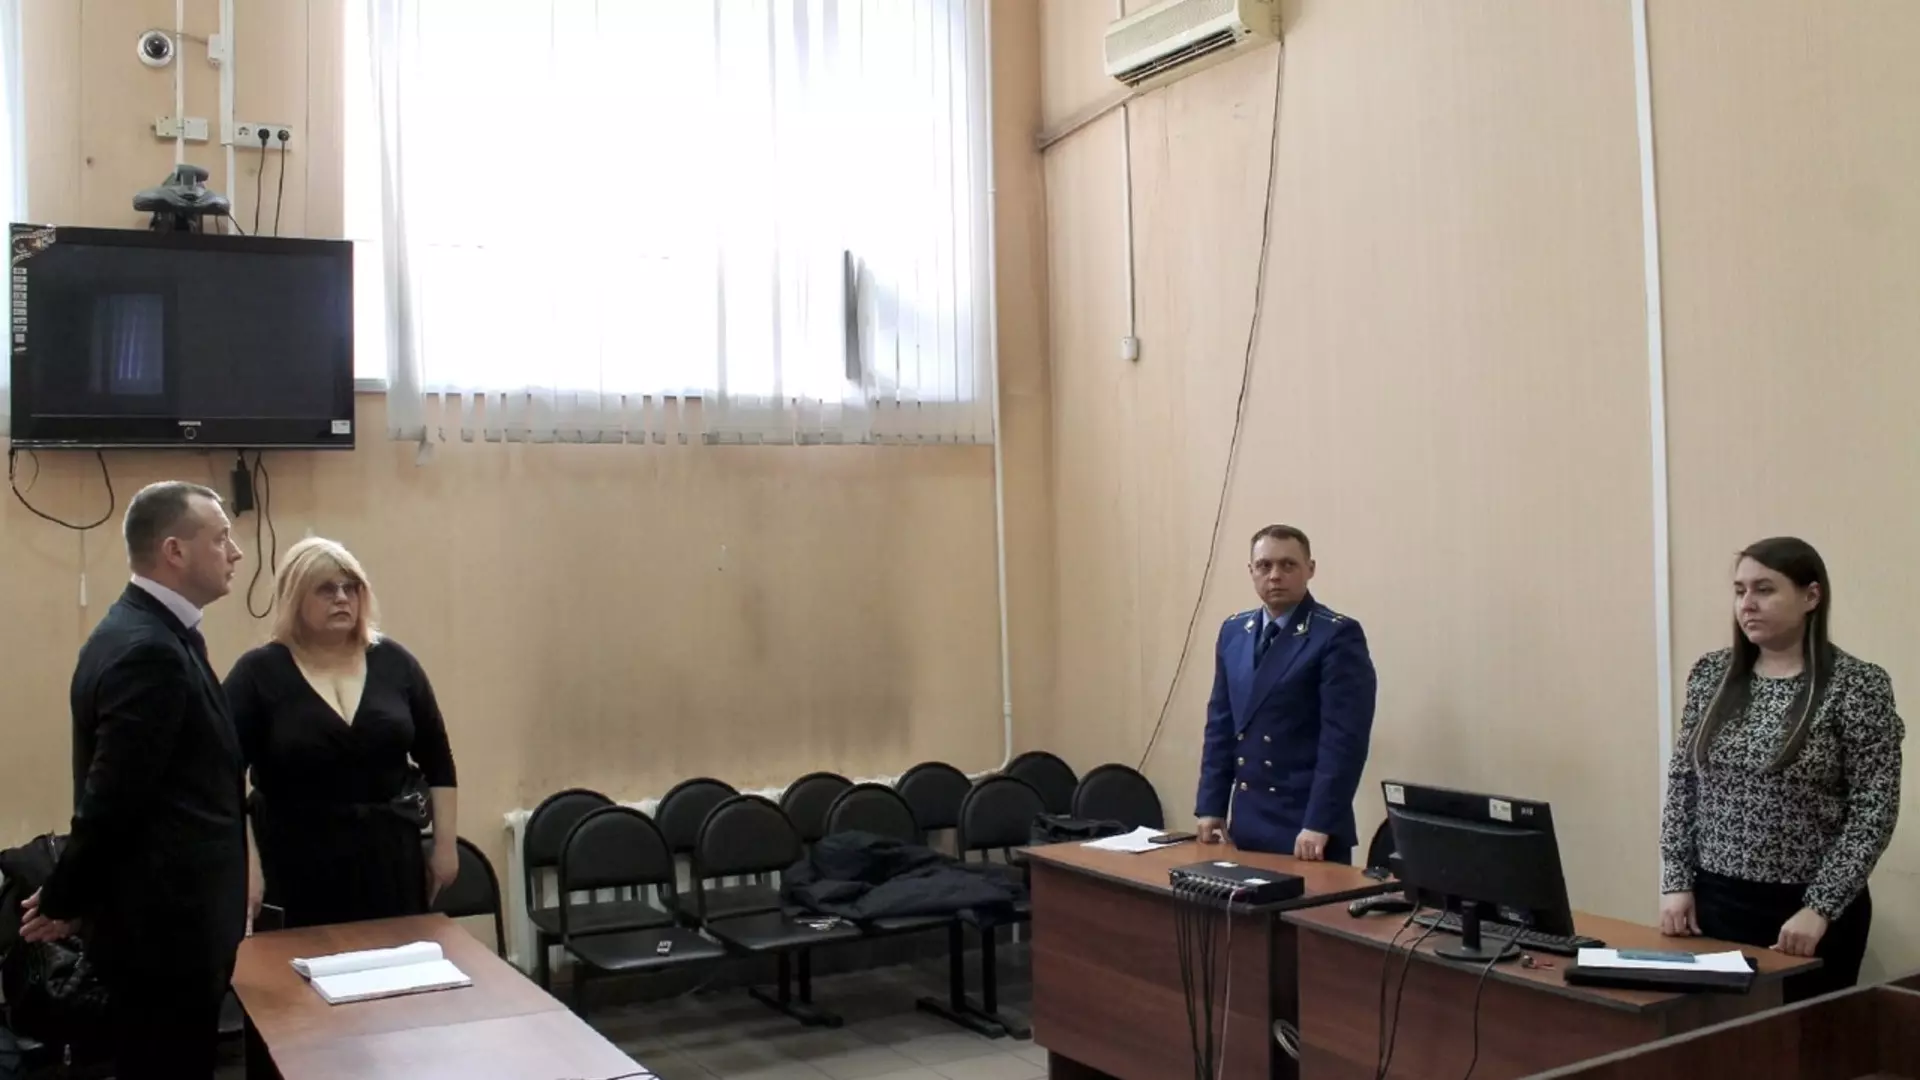 Меру пресечения обвиняемым мошенничестве со стройкой в в Тогучине сохранили